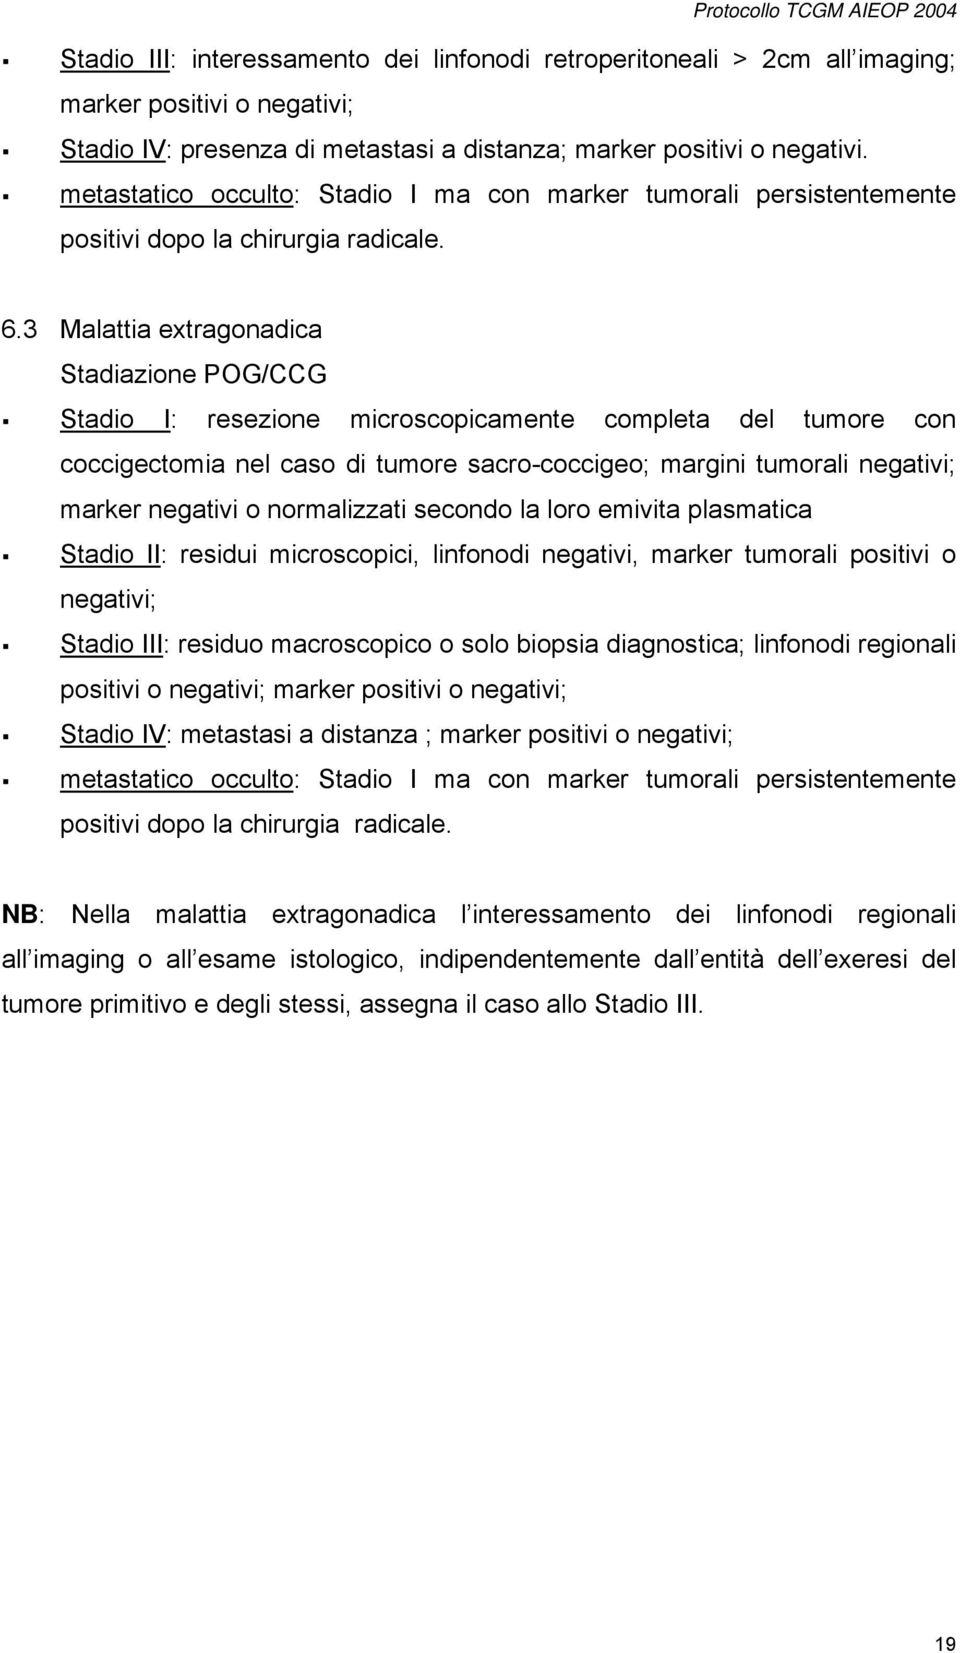 3 Malattia extragonadica Stadiazione POG/CCG Stadio I: resezione microscopicamente completa del tumore con coccigectomia nel caso di tumore sacro-coccigeo; margini tumorali negativi; marker negativi